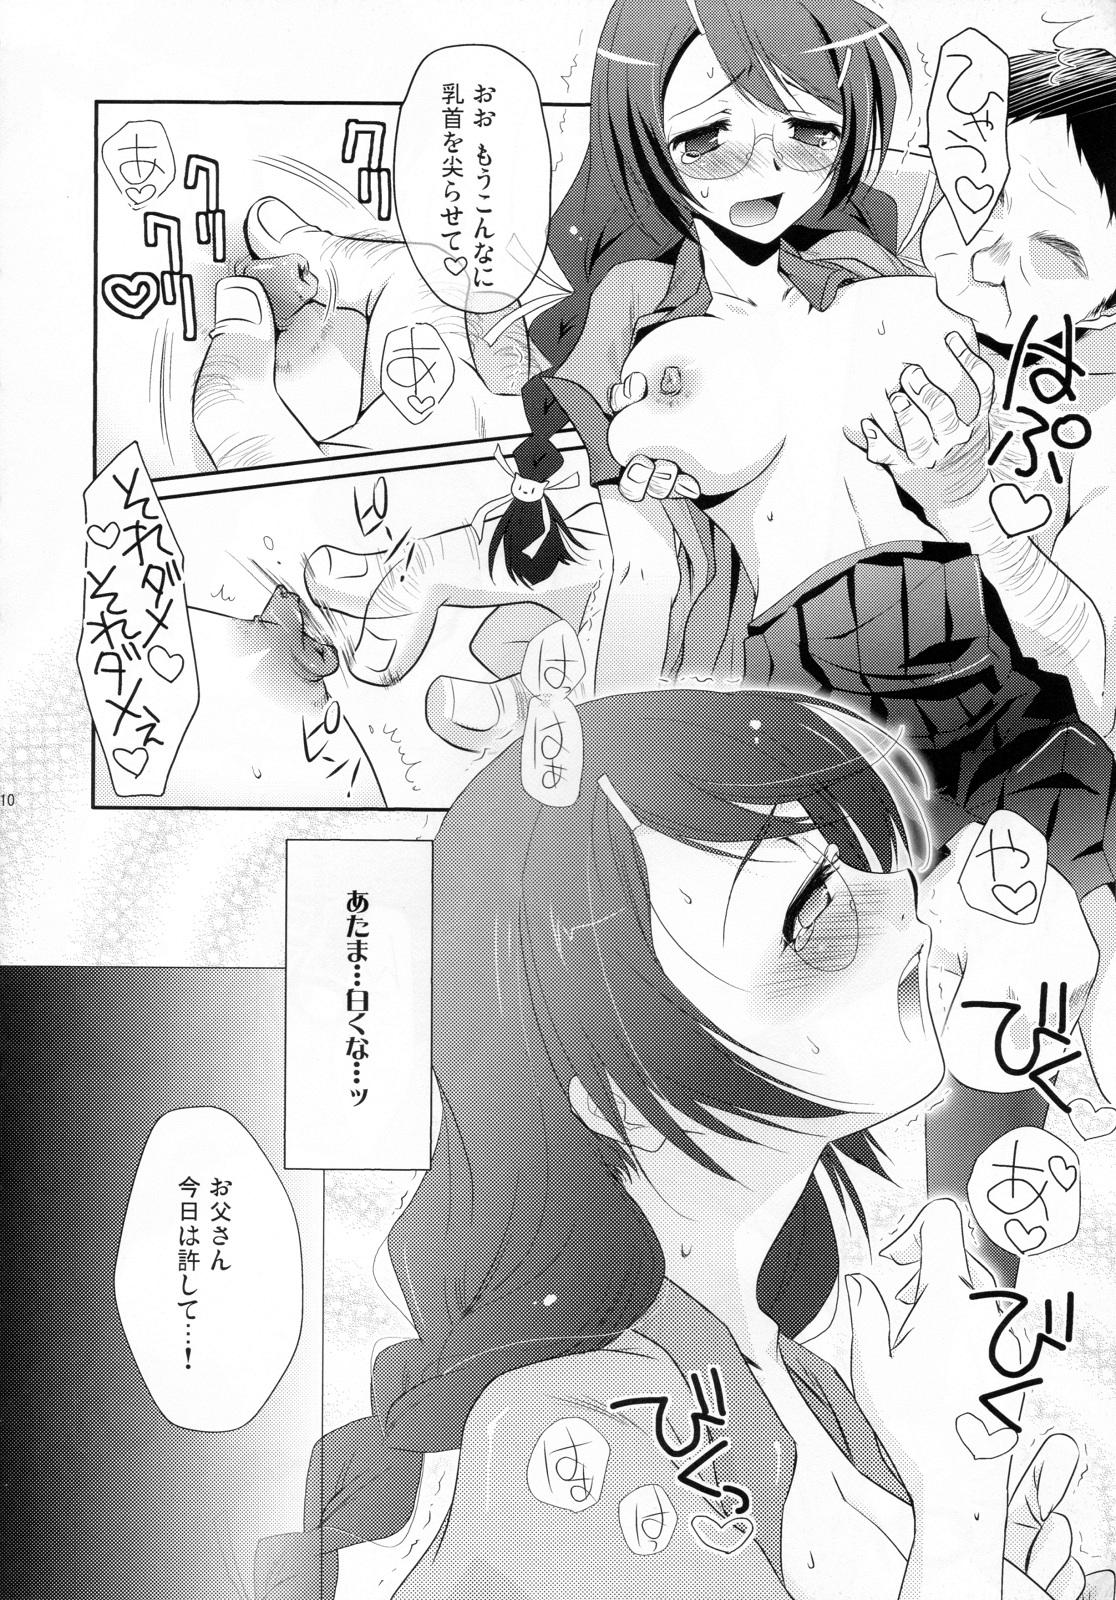 Transex Neko no inu ma ni Nezumi wa Odoru - Bakemonogatari Russian - Page 10